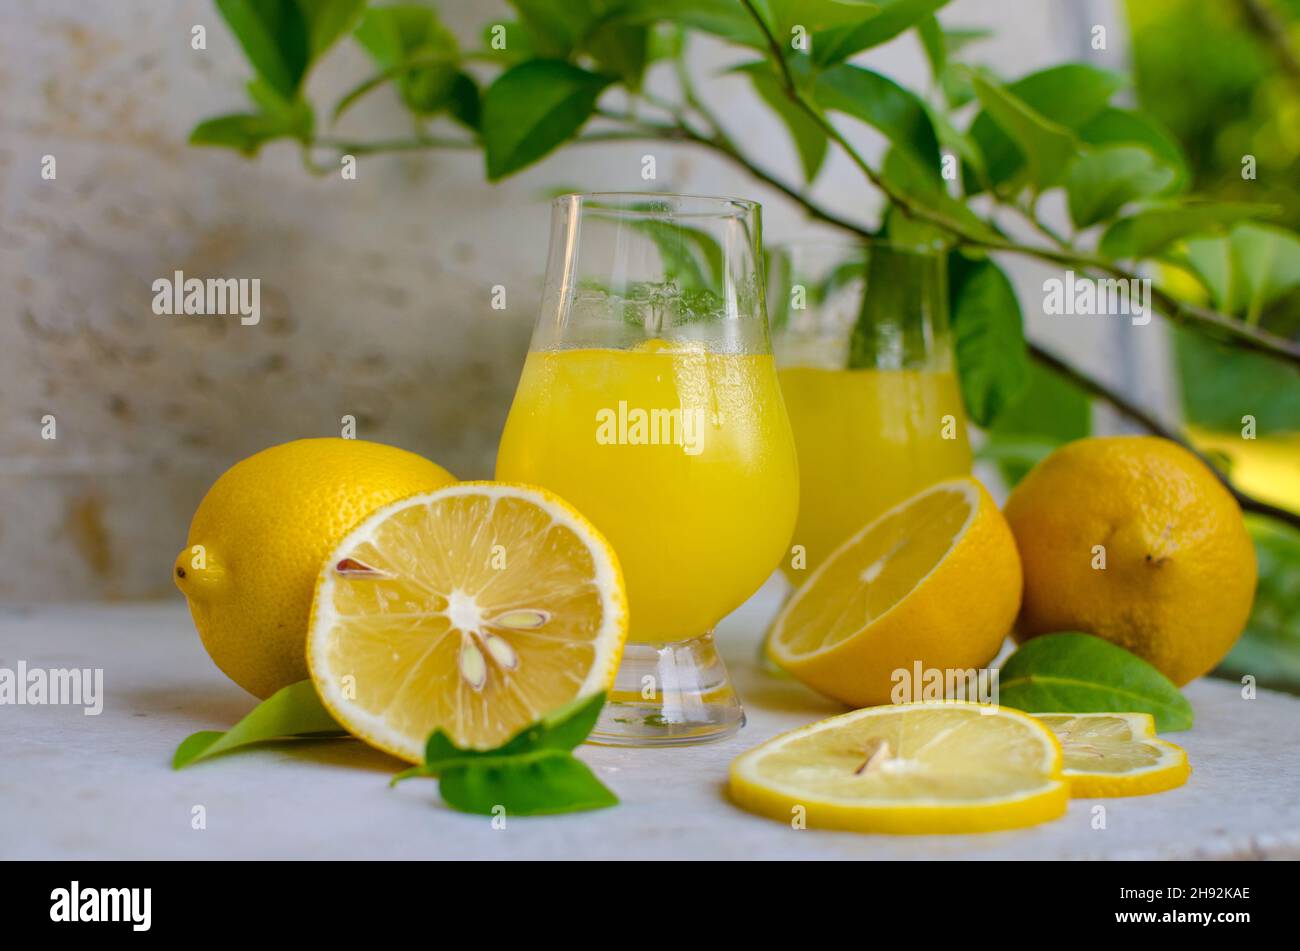 Tradizionale italiano limone alcol bevanda liquore limoncello fatti in casa con pezzi di limone Foto Stock